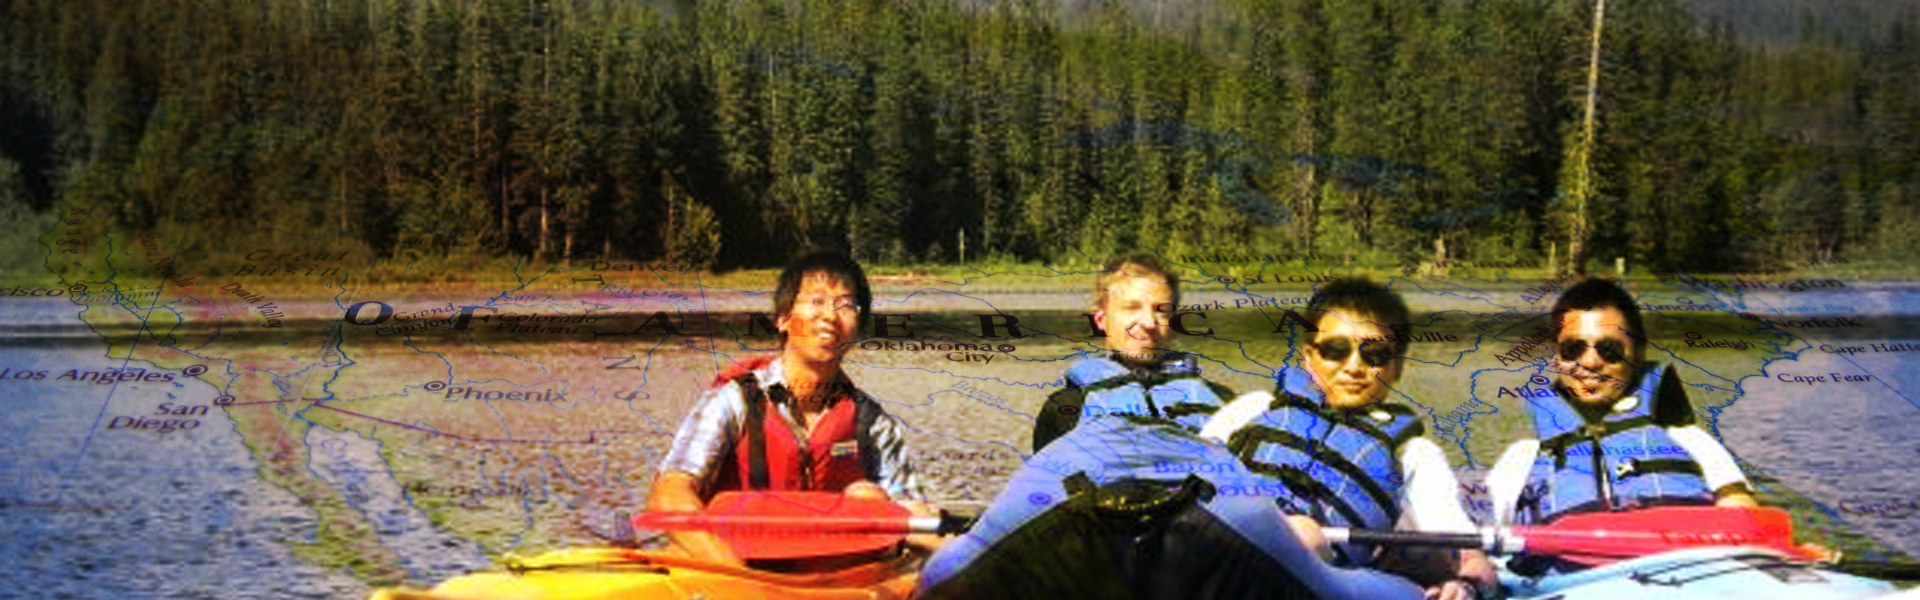 Research team kayaking